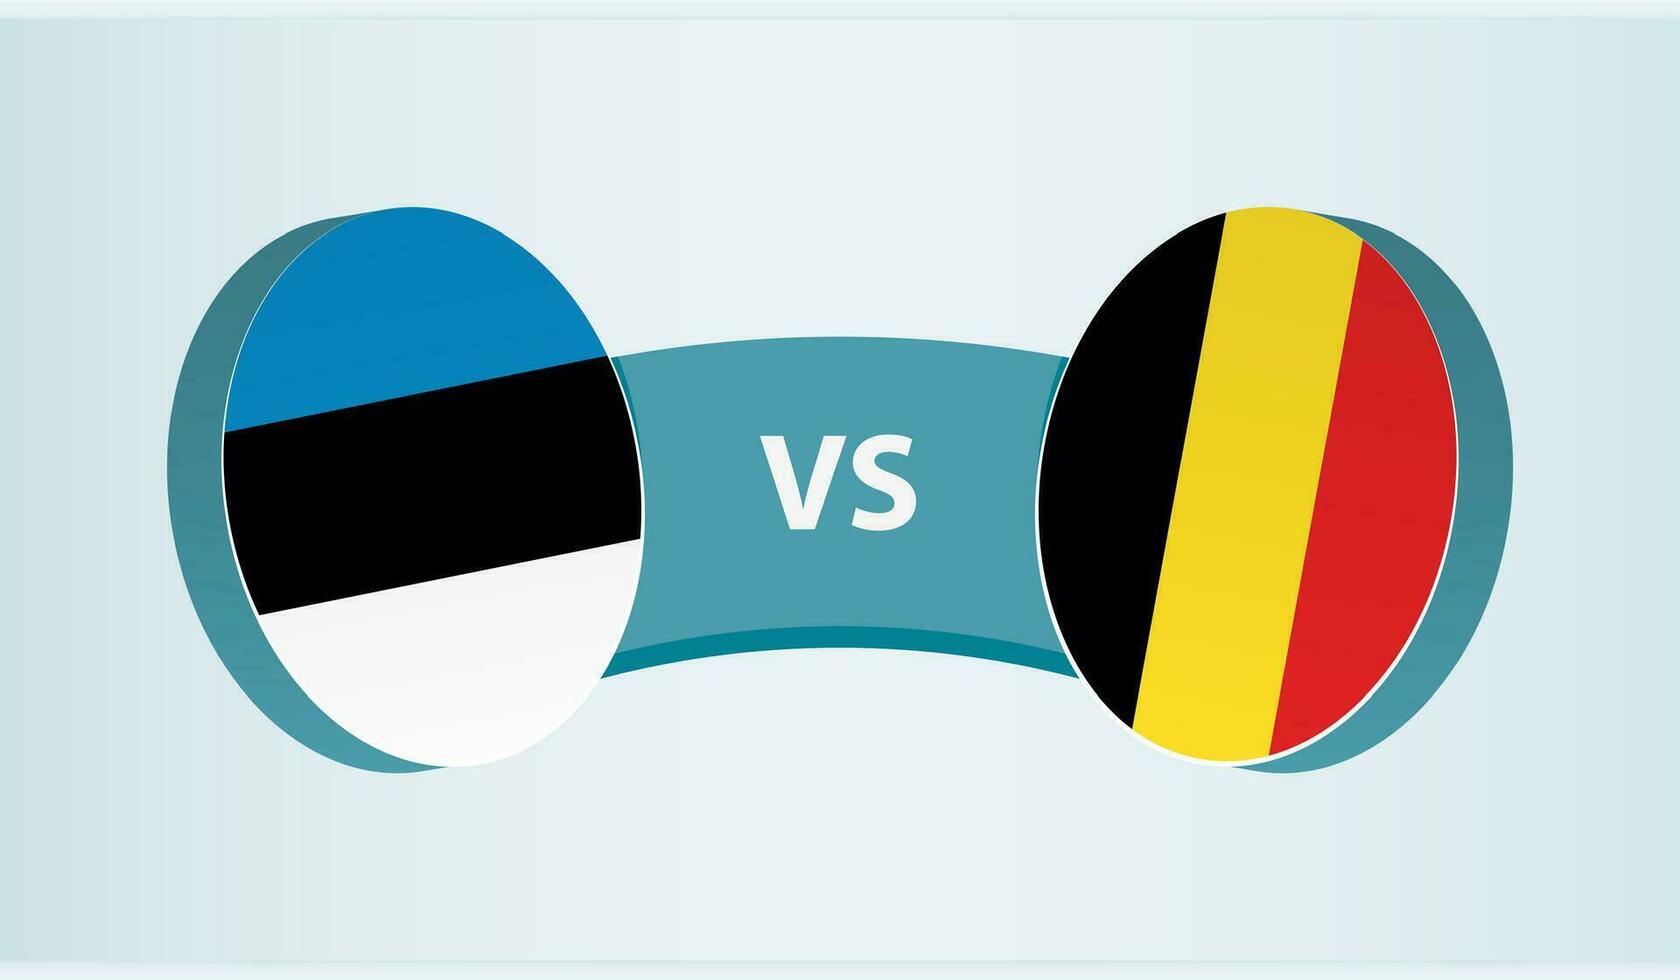 Estonia versus Belgium, team sports competition concept. vector